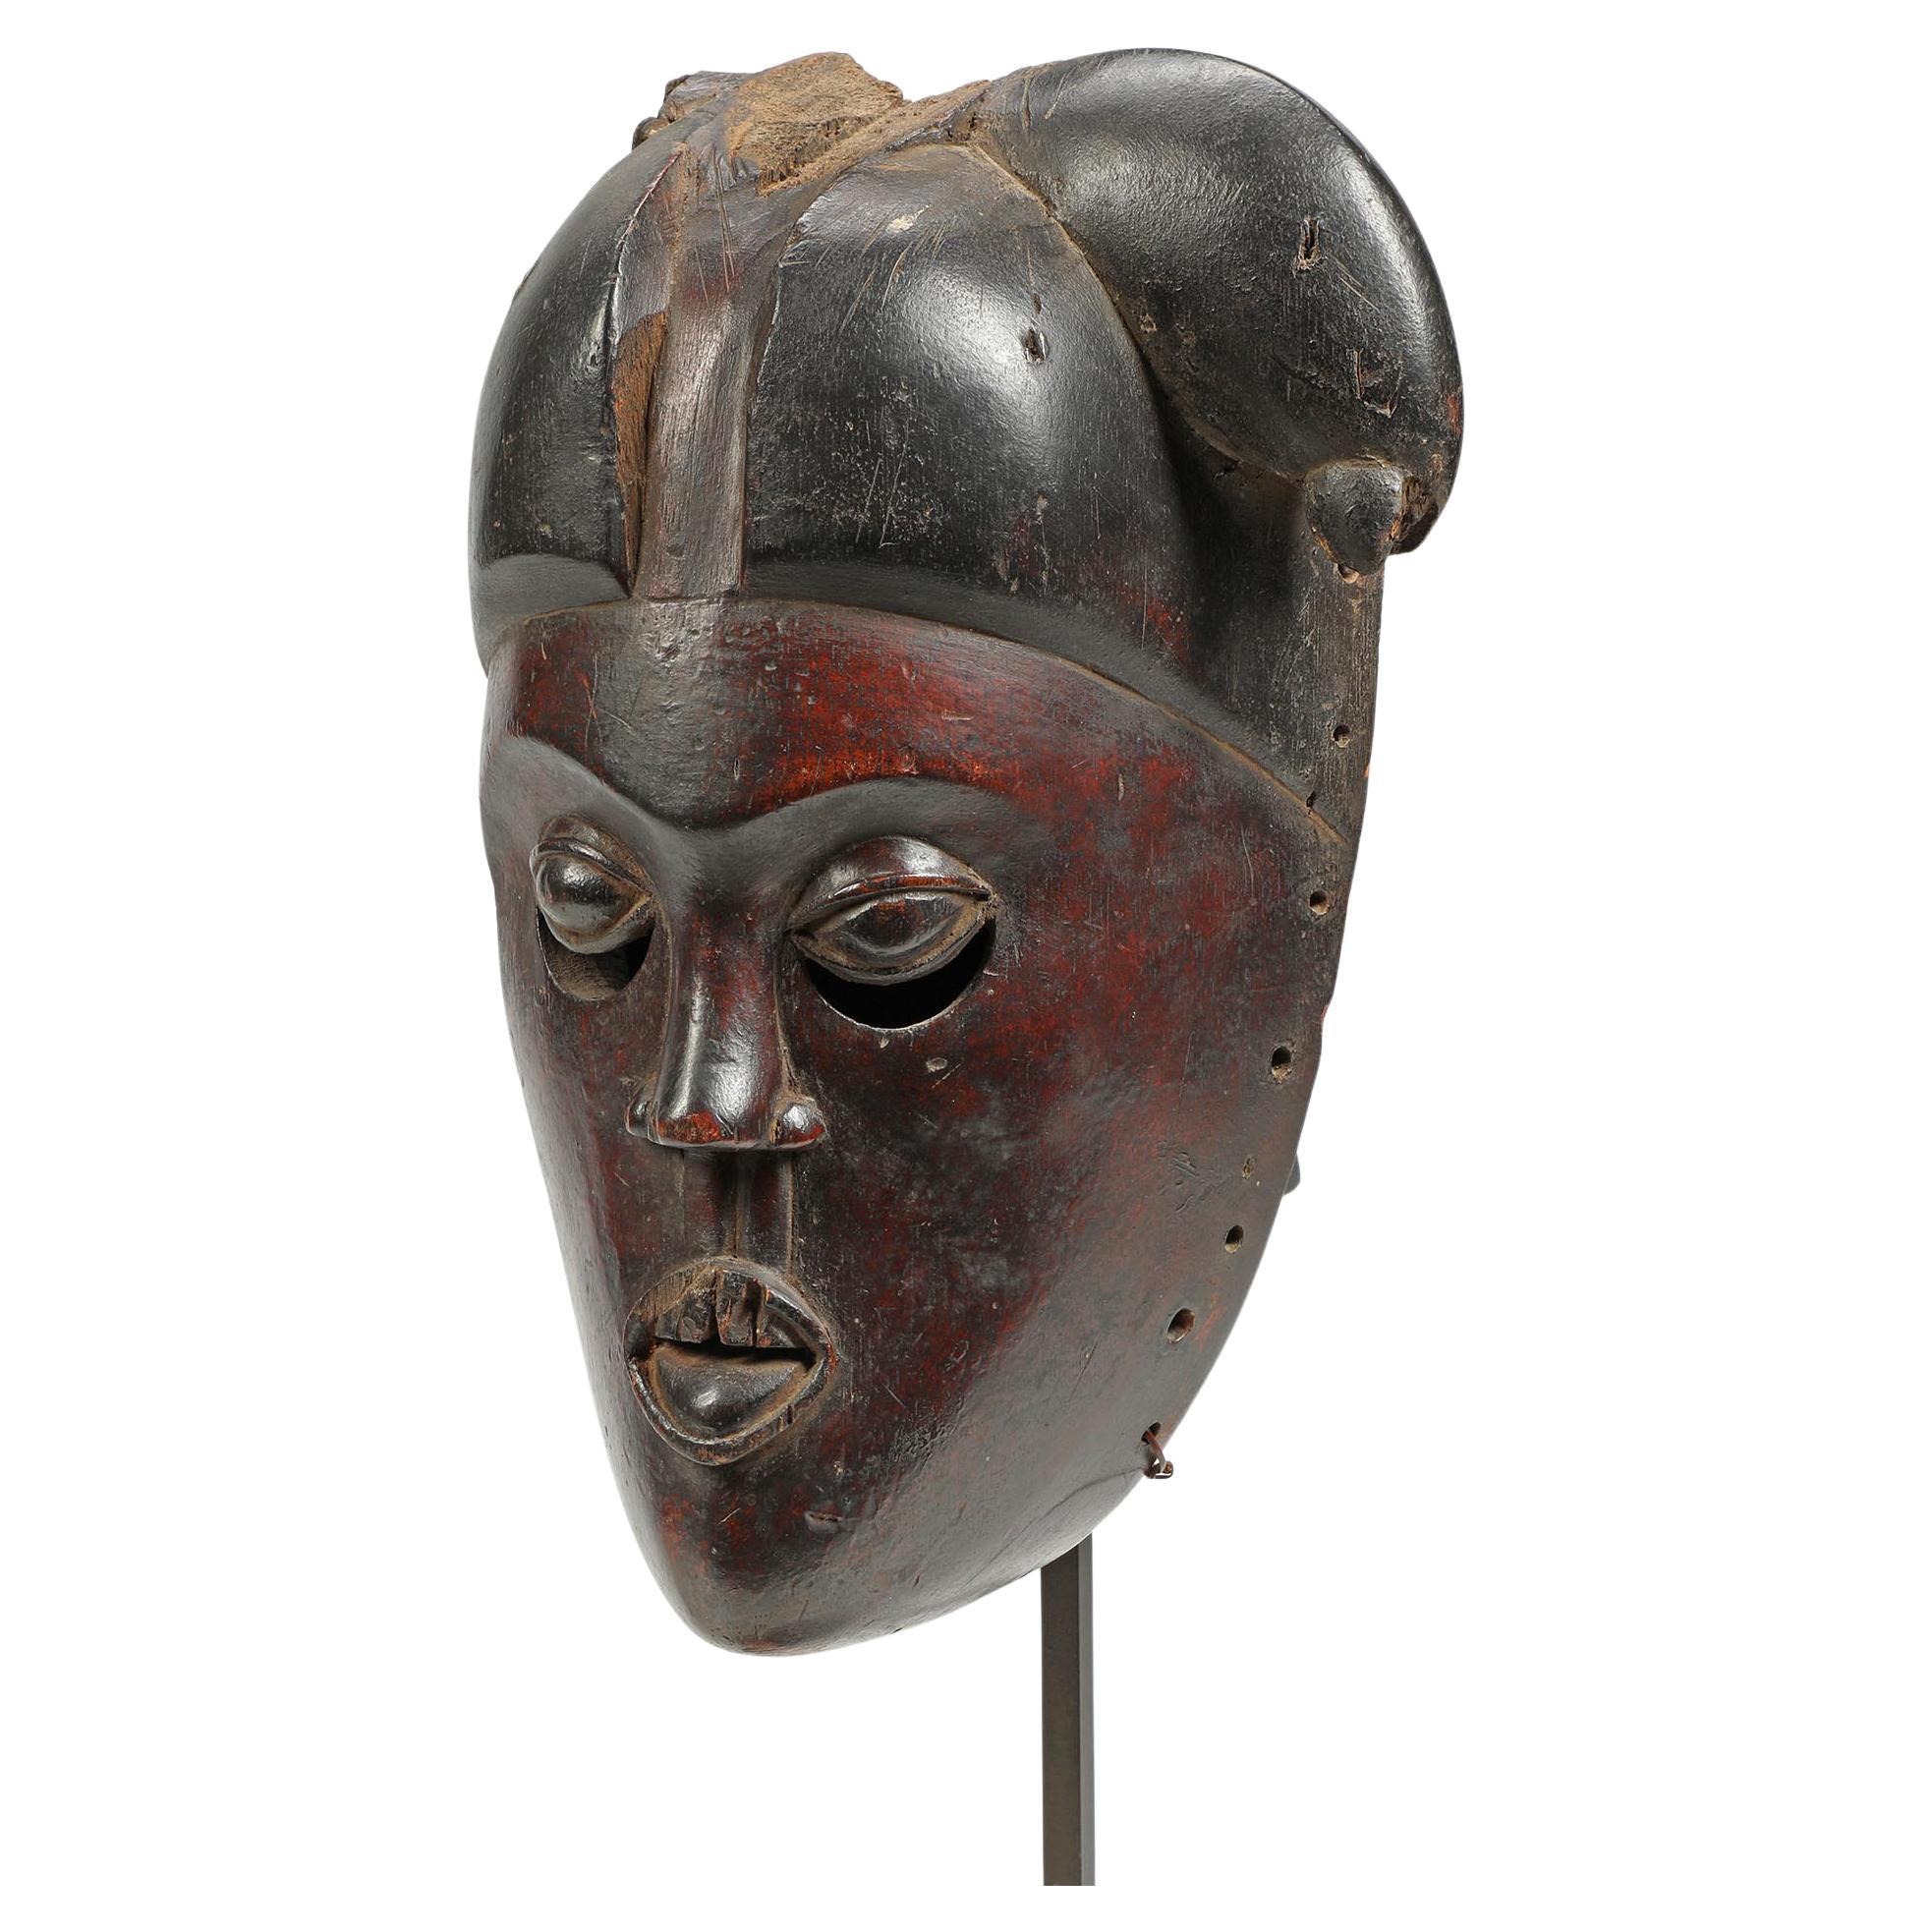 Fragment de masque Ibibio précoce du Nigeria, pigment noir-rouge profond, yeux expressifs. Un visage convaincant sur un support métallique personnalisé. Dégâts d'insectes anciens/érosion sur les cheveux droits et le côté du visage. Masque de 10,75